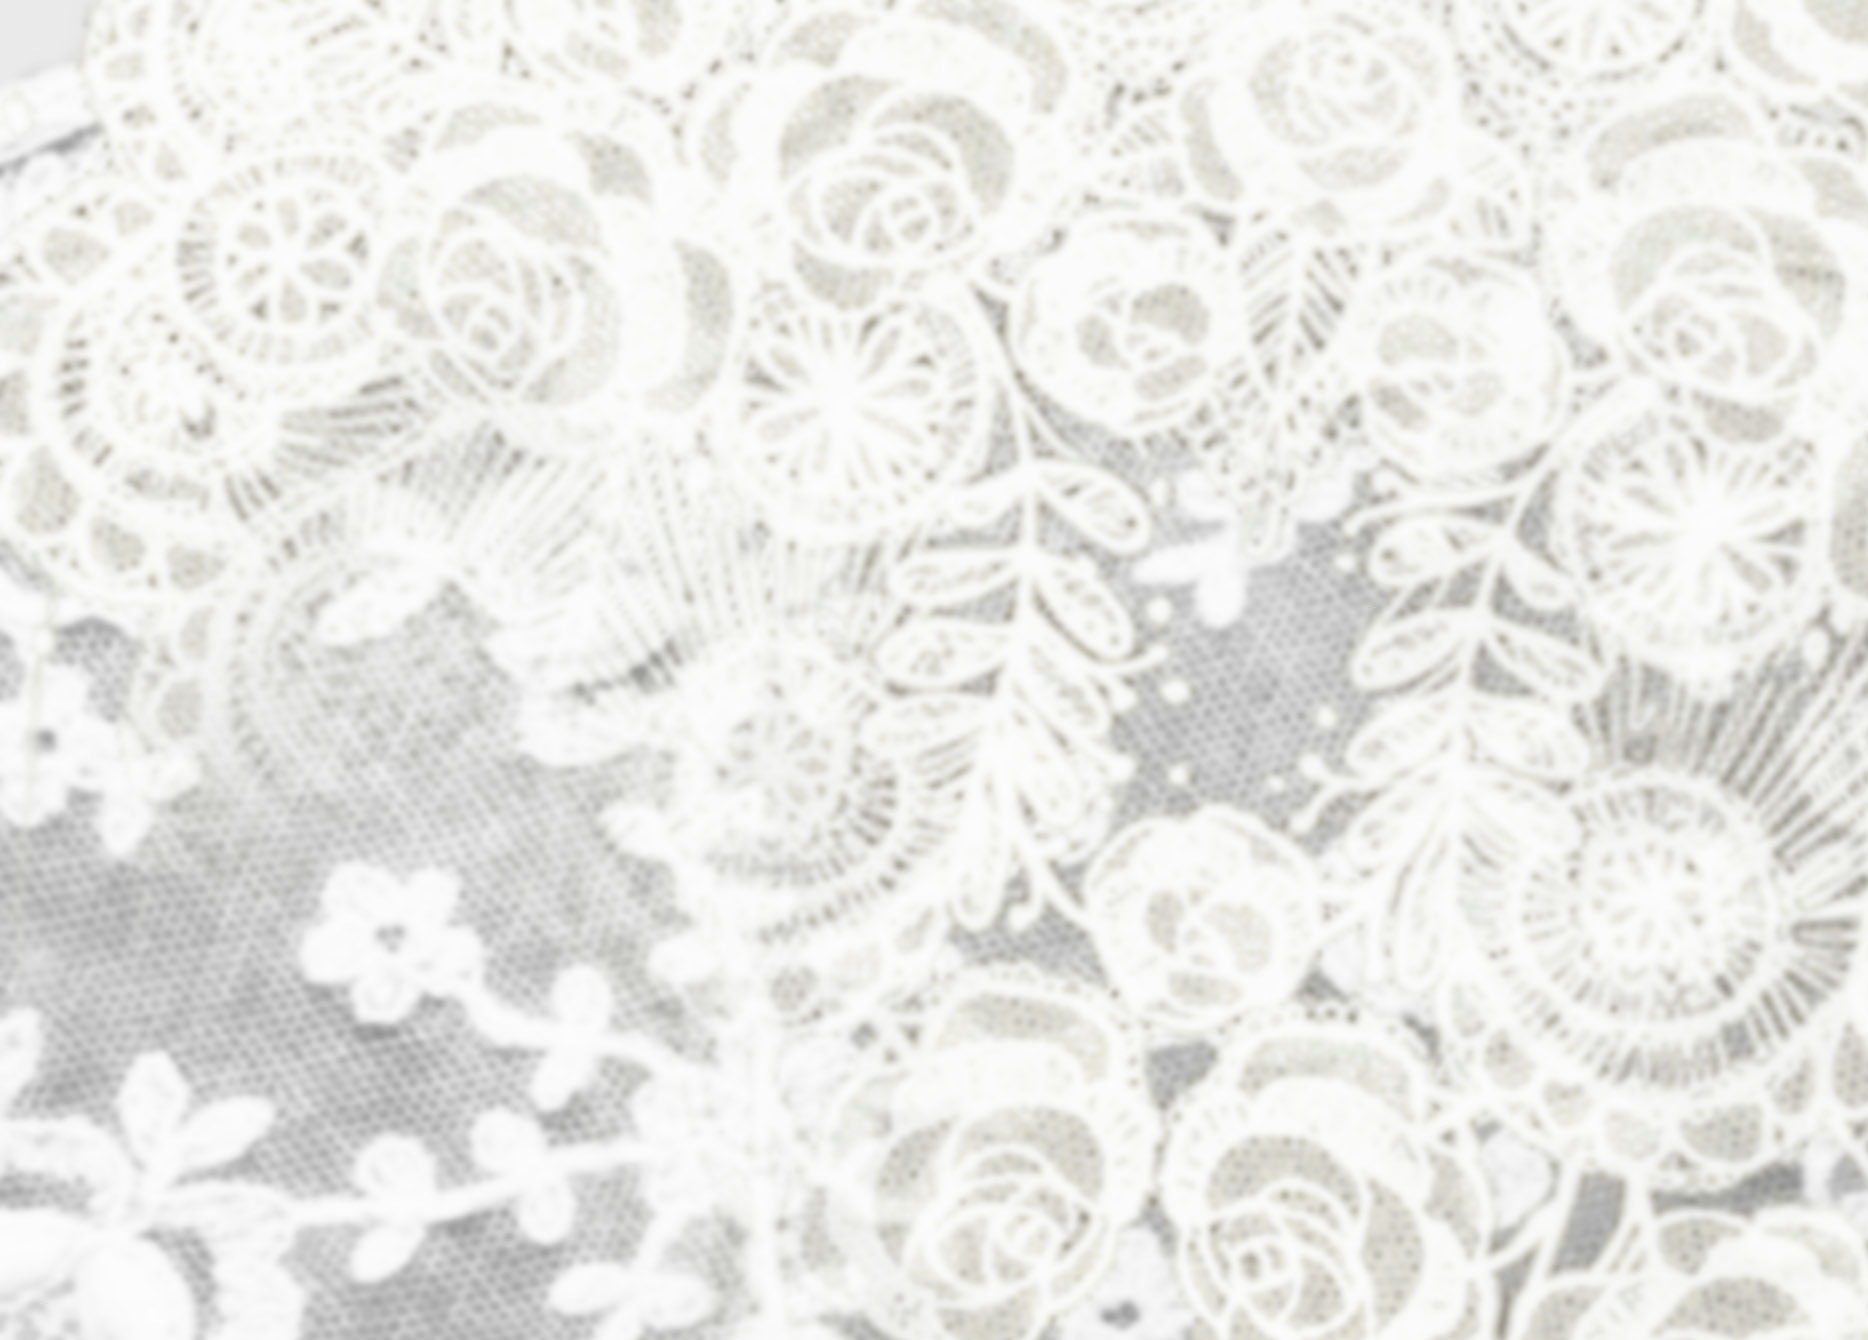 lace wallpaper,lace,pattern,textile,design,floral design